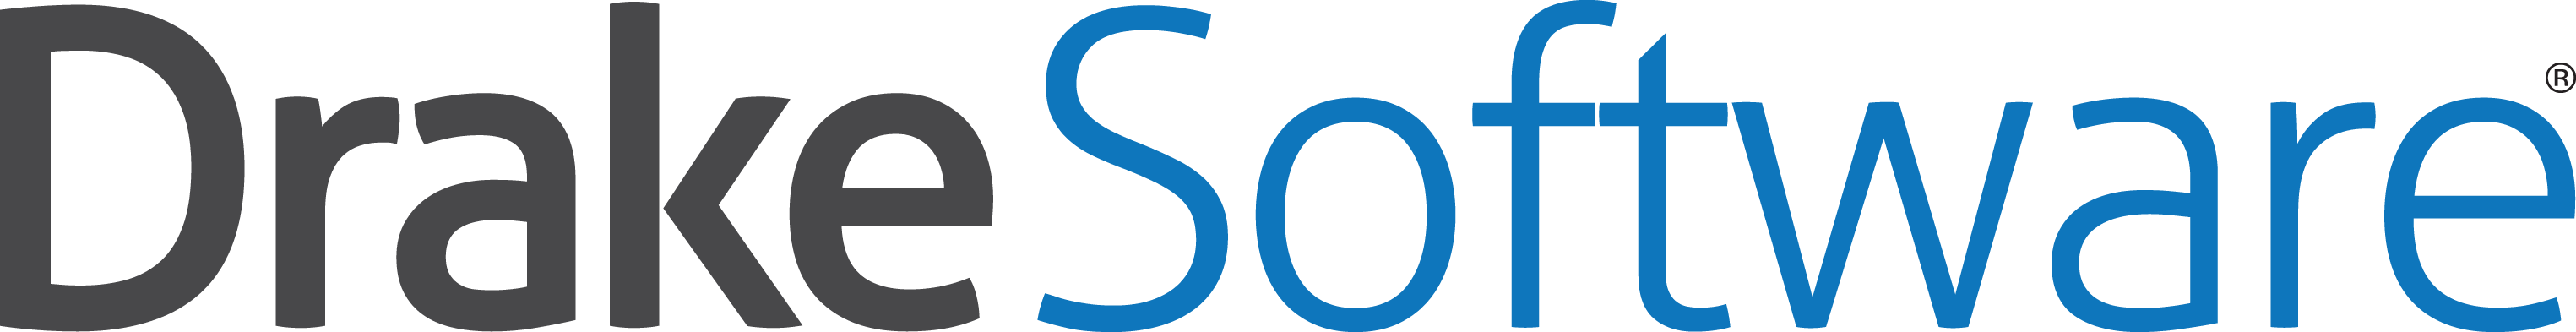 Drake_Software-logo